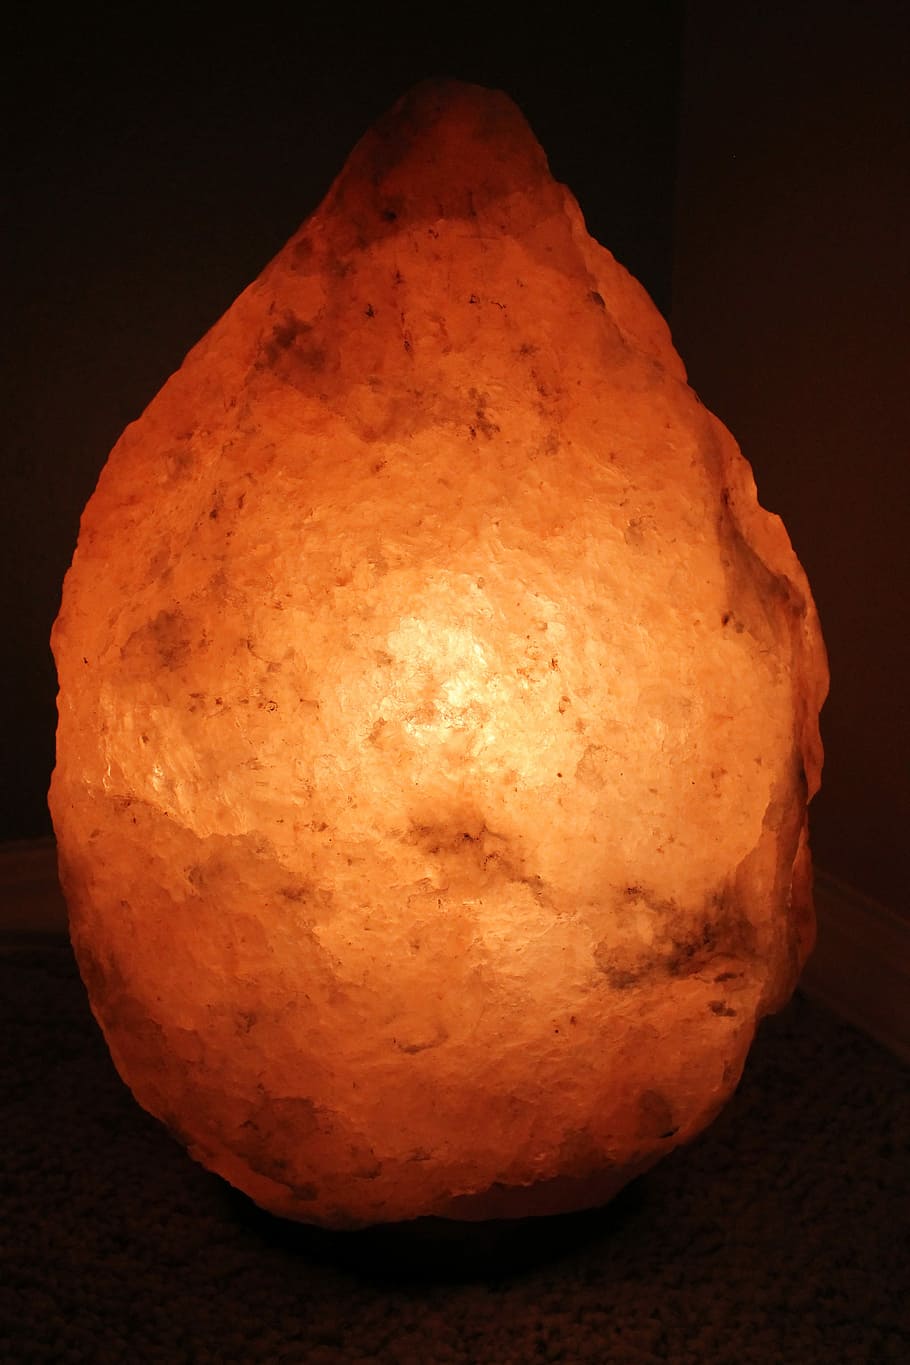 turned-on himalayan salt lamp, Himalayan Salt, Salt Lamp, himalayan salt lamp, lamp, health, himalayan, mineral, wellness, natural